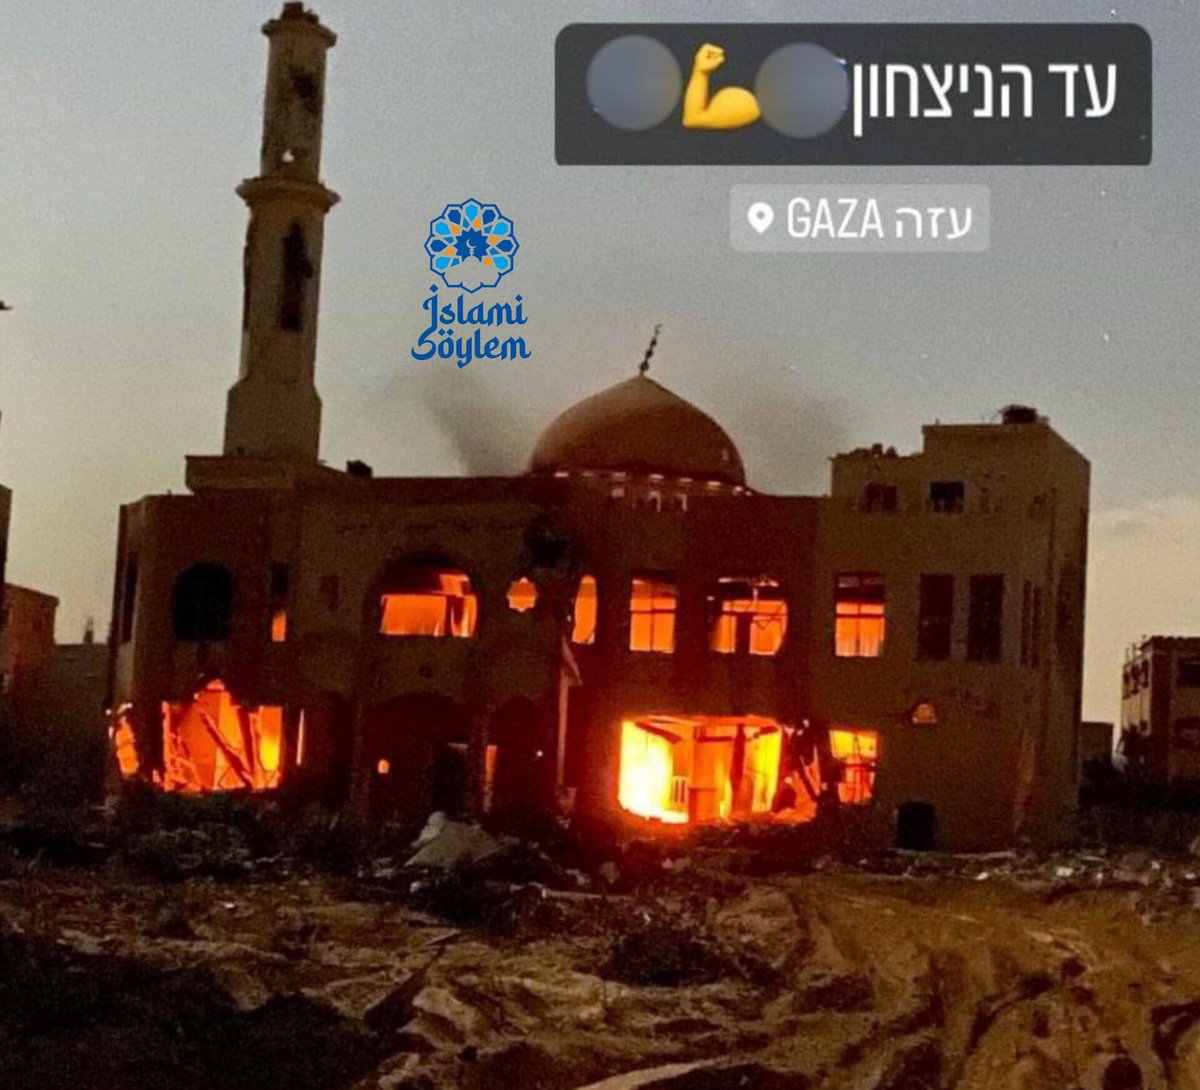 📍İşgal askerleri Gazze Şeridi'nde bir camiyi hem yaktı hem de o anların fotoğraflarını sosyal medyadan bir çok platformda yayınladı.

'Sabret. Allah’ın vaati şüphesiz gerçektir.'
(Mü'min Sûresi, 55. Ayet)